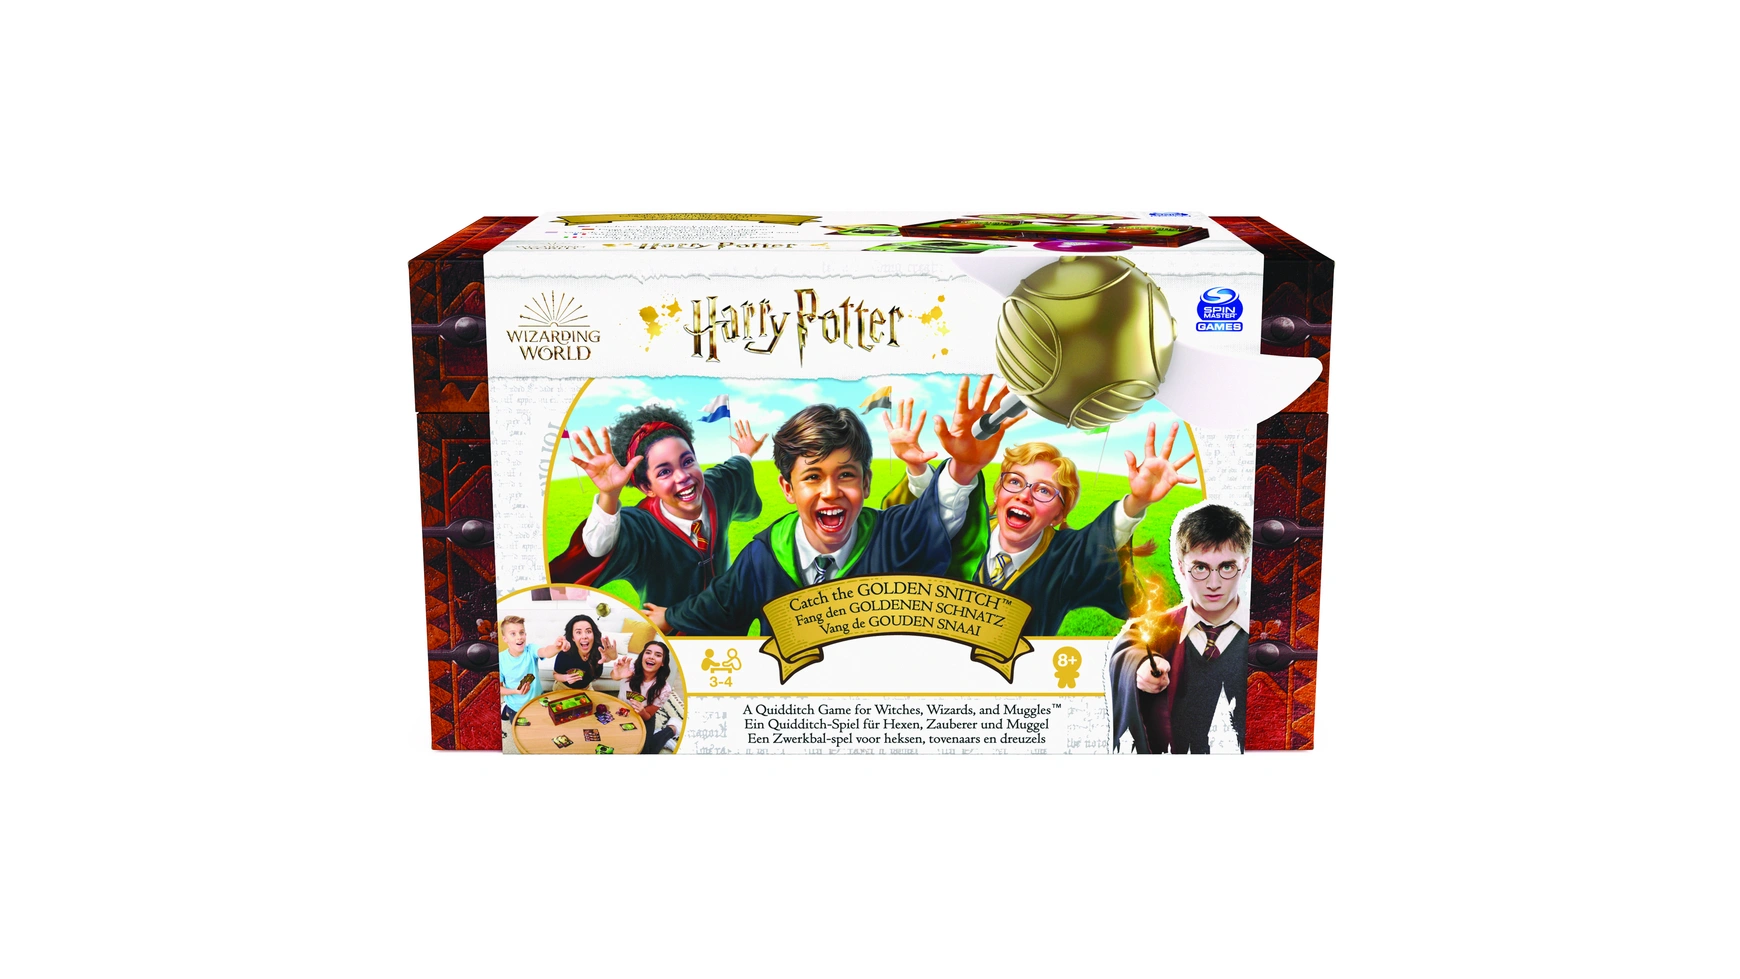 wizarding world значок гарри поттер снитч Spin Master Games Harry Potter Catch the Golden Snitch карточная игра для 3-4 игроков от 8 лет